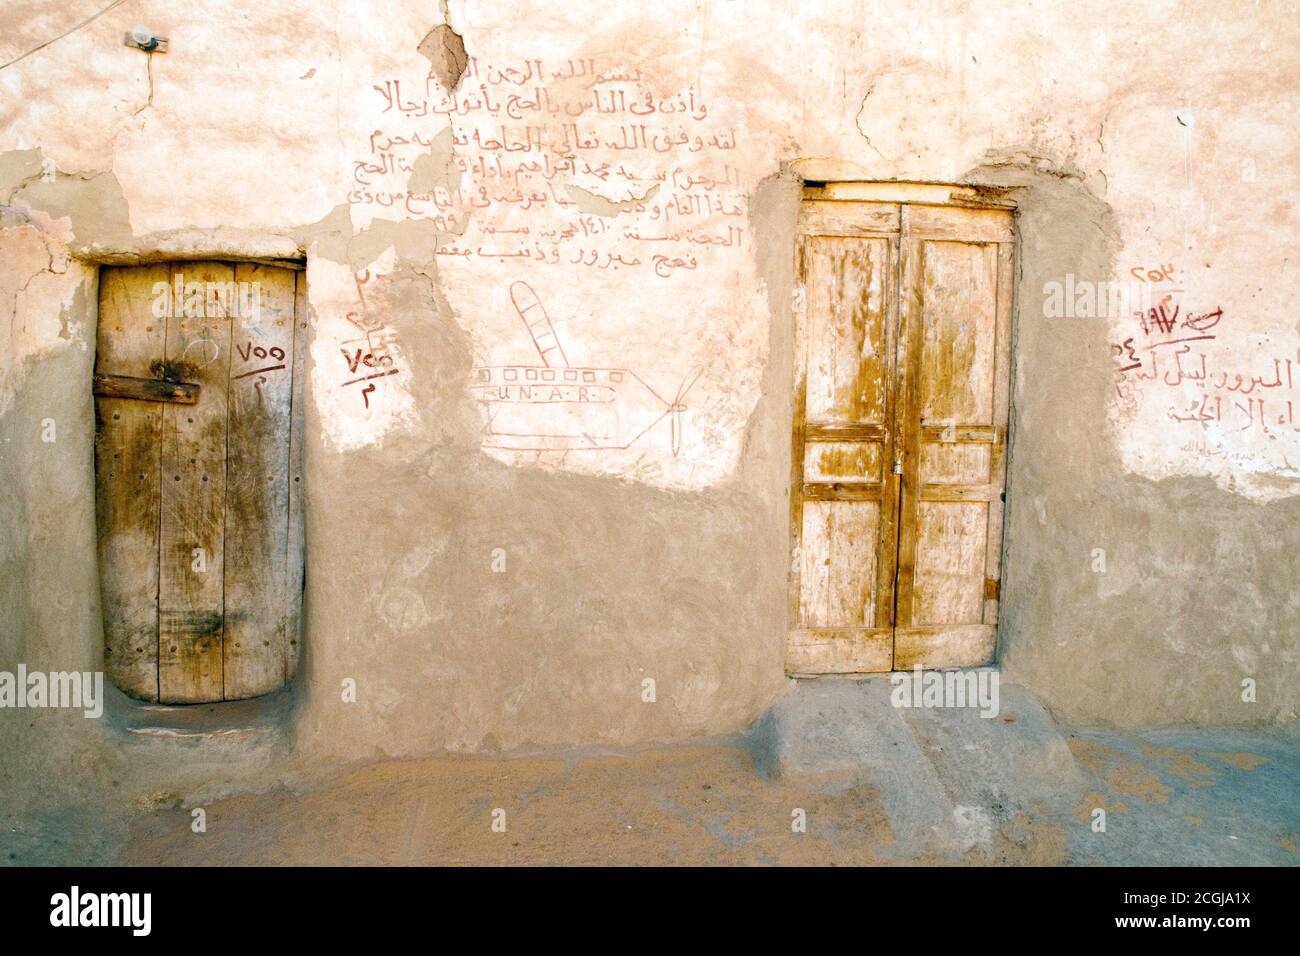 Graffiti arabe sur un mur dans le village médiéval de boue saharienne d'al Qasr, dans l'oasis de Dakhla, dans le désert occidental du Sahara, Nouvelle Vallée, Egypte. Banque D'Images